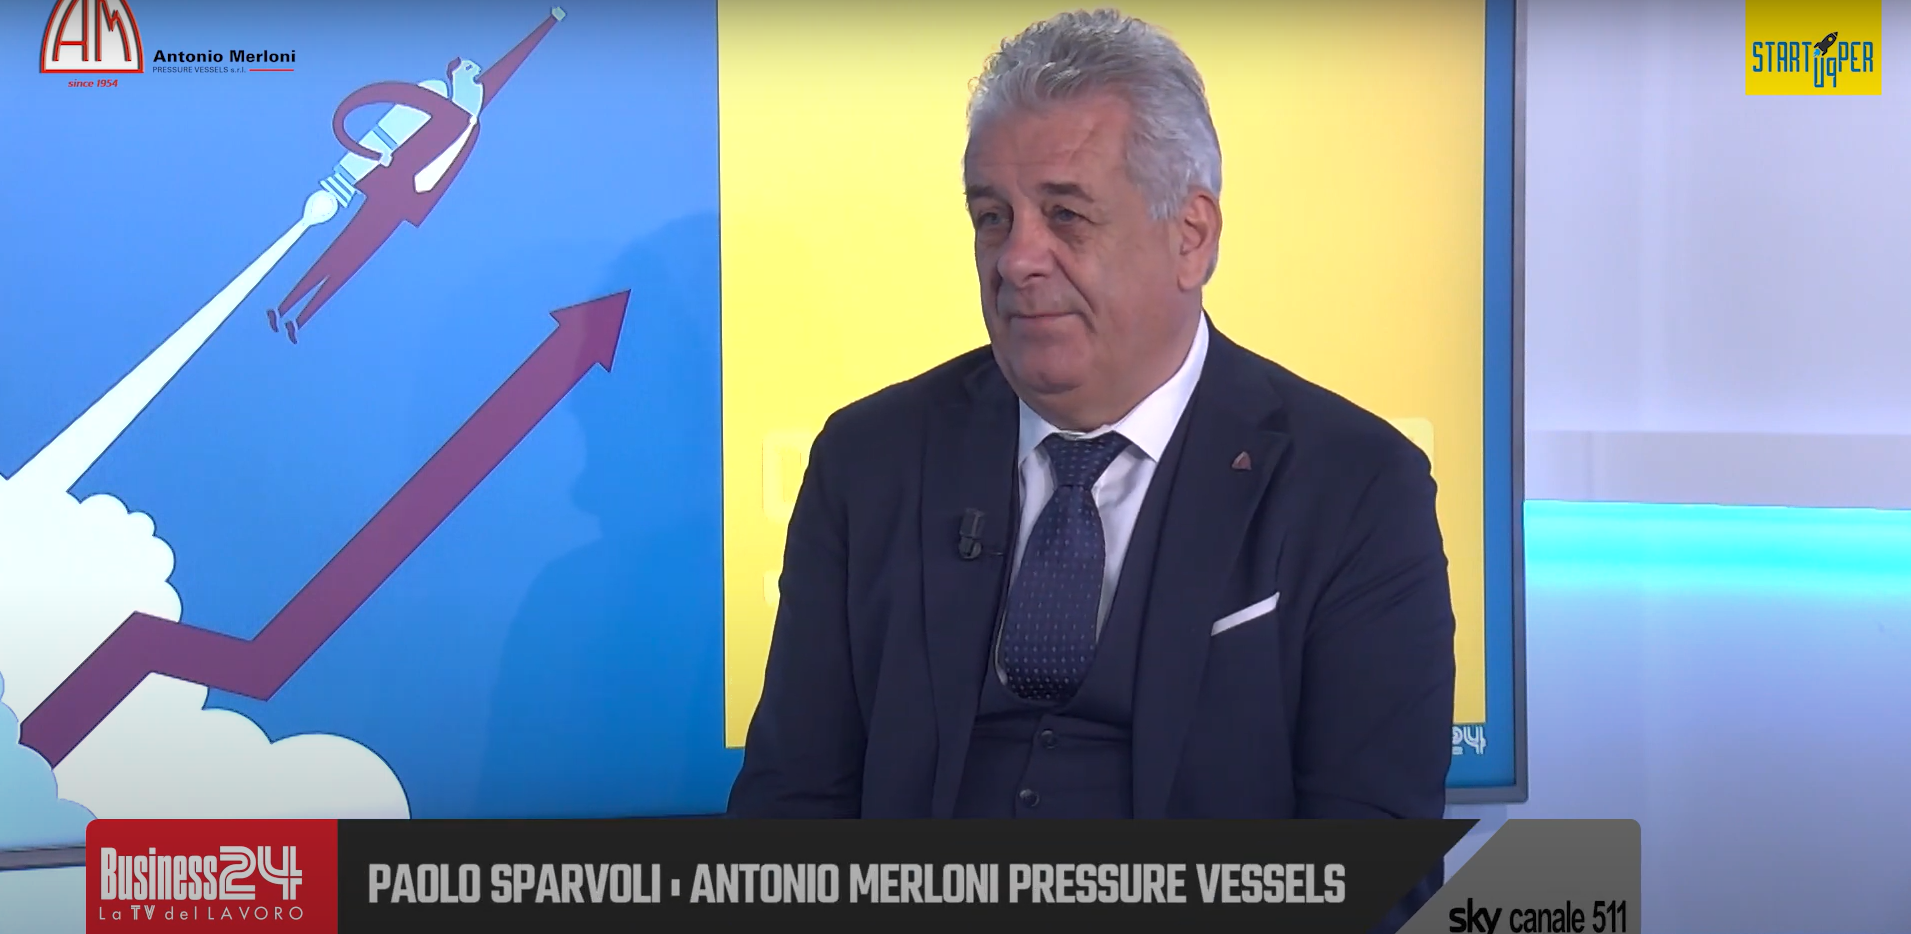 Antonio Merloni Pressure Vessels, soluzioni per lo stoccaggio di energia pulita